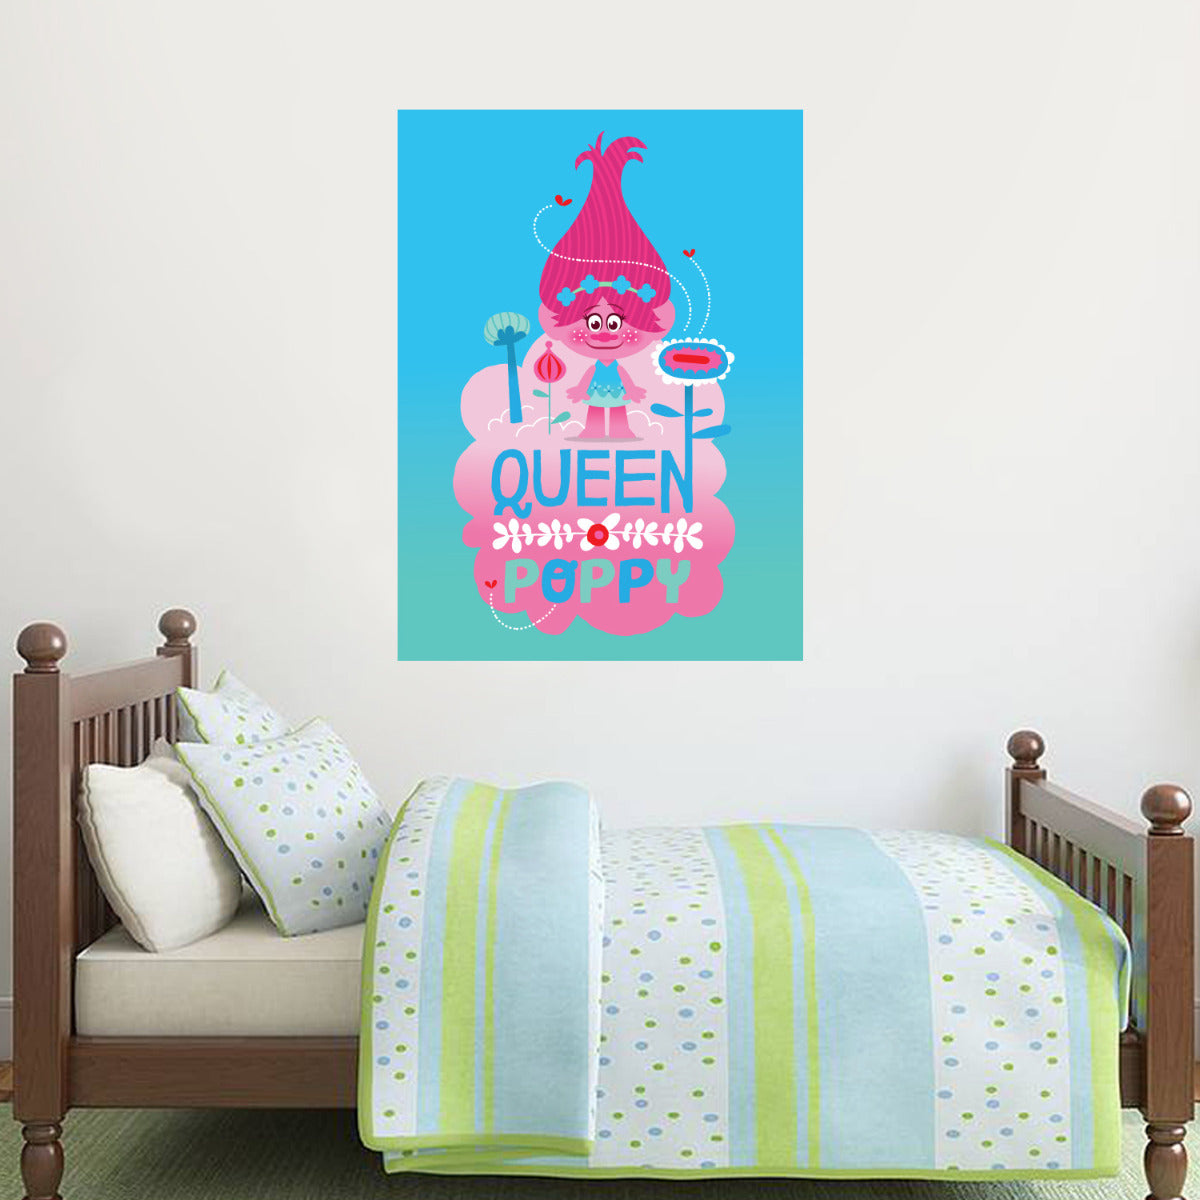 Trolls - Queen Poppy Wall Sticker